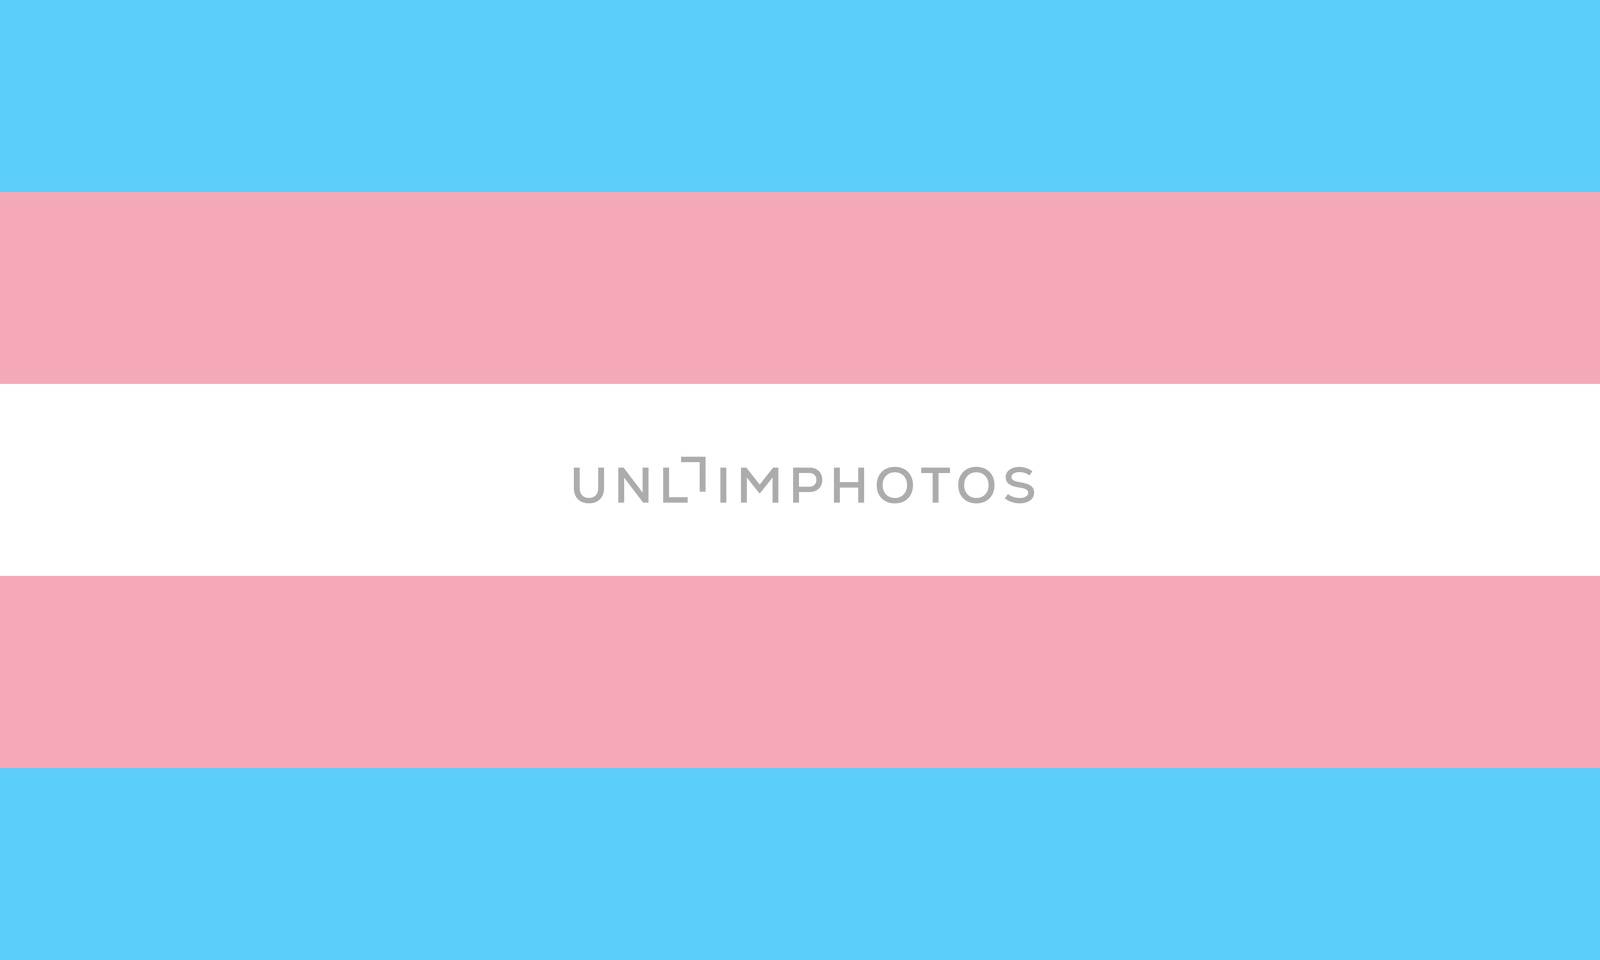 transgender trans people pride flag symbol illustration